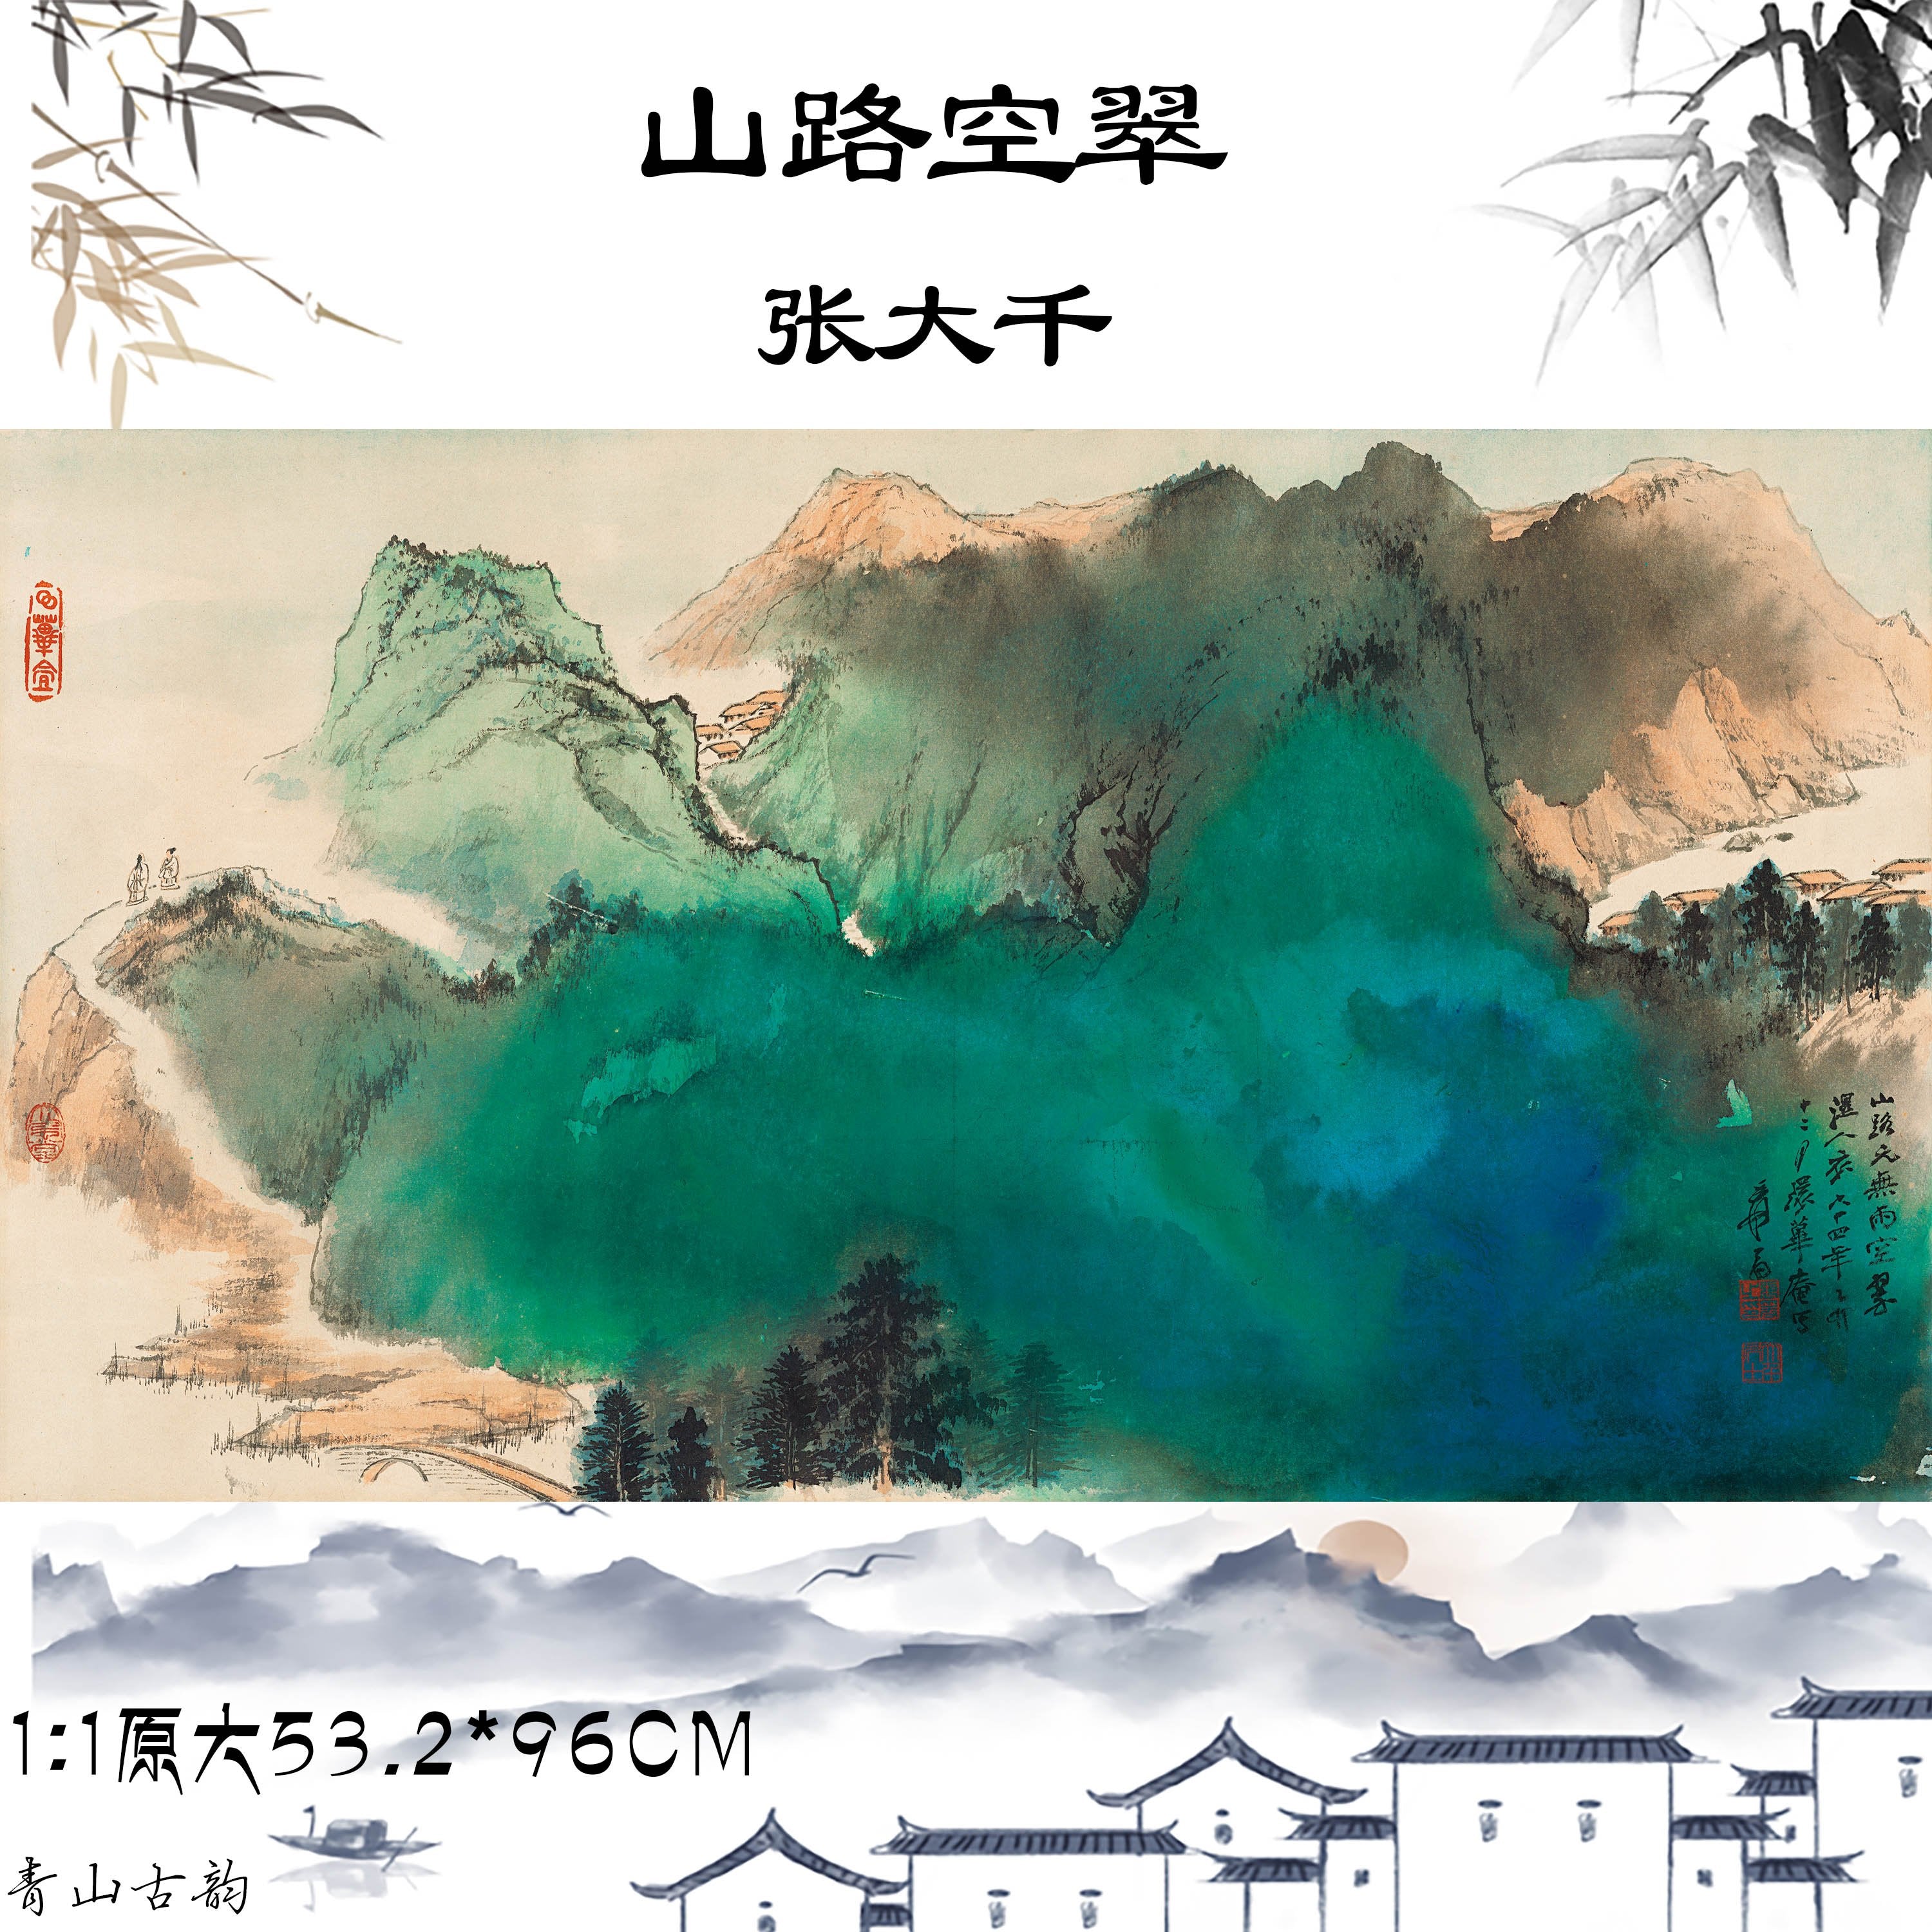 Chinese Antique Art Painting 张大千 山路空翠 Zhang Daqian Shanlu Kongcui